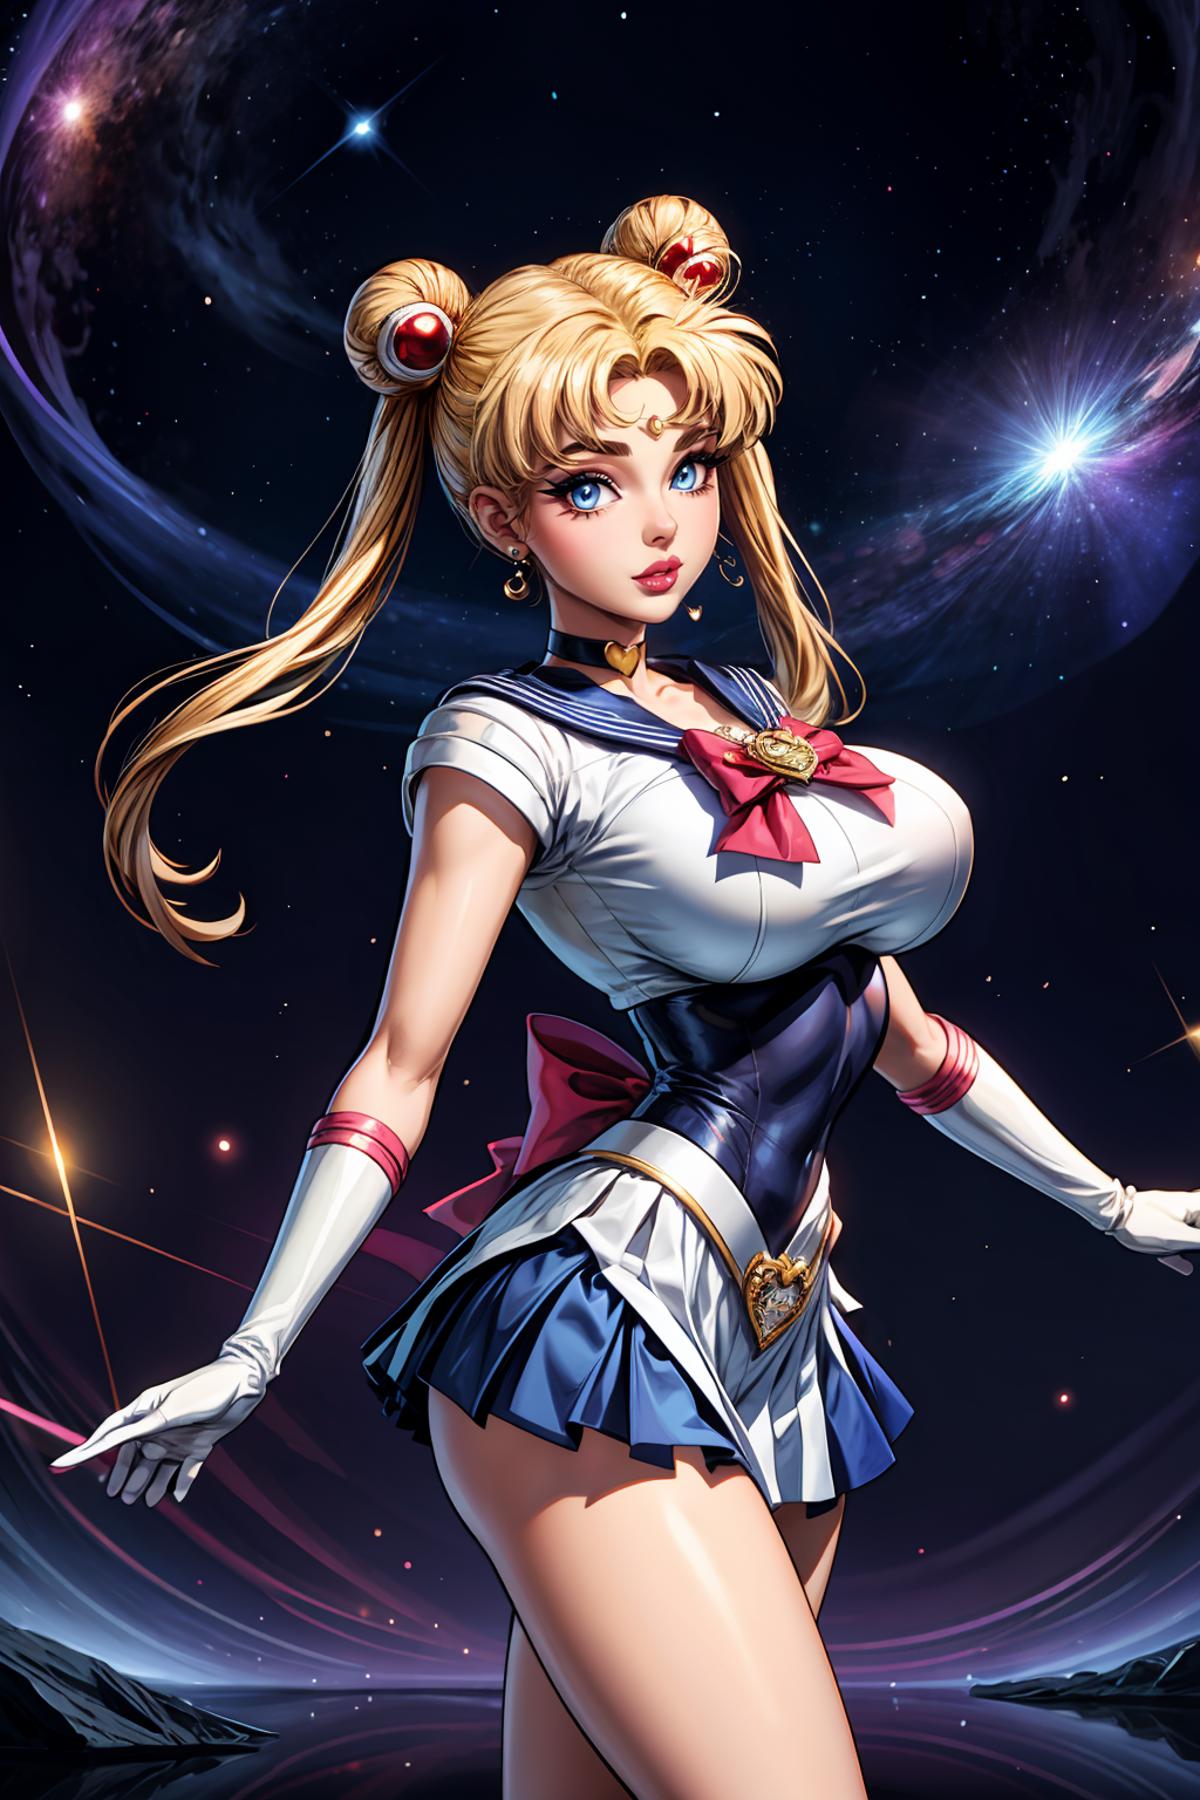 Sailor Moon / Usagi Tsukino (Sailor Moon) - Lora image by DrPibb